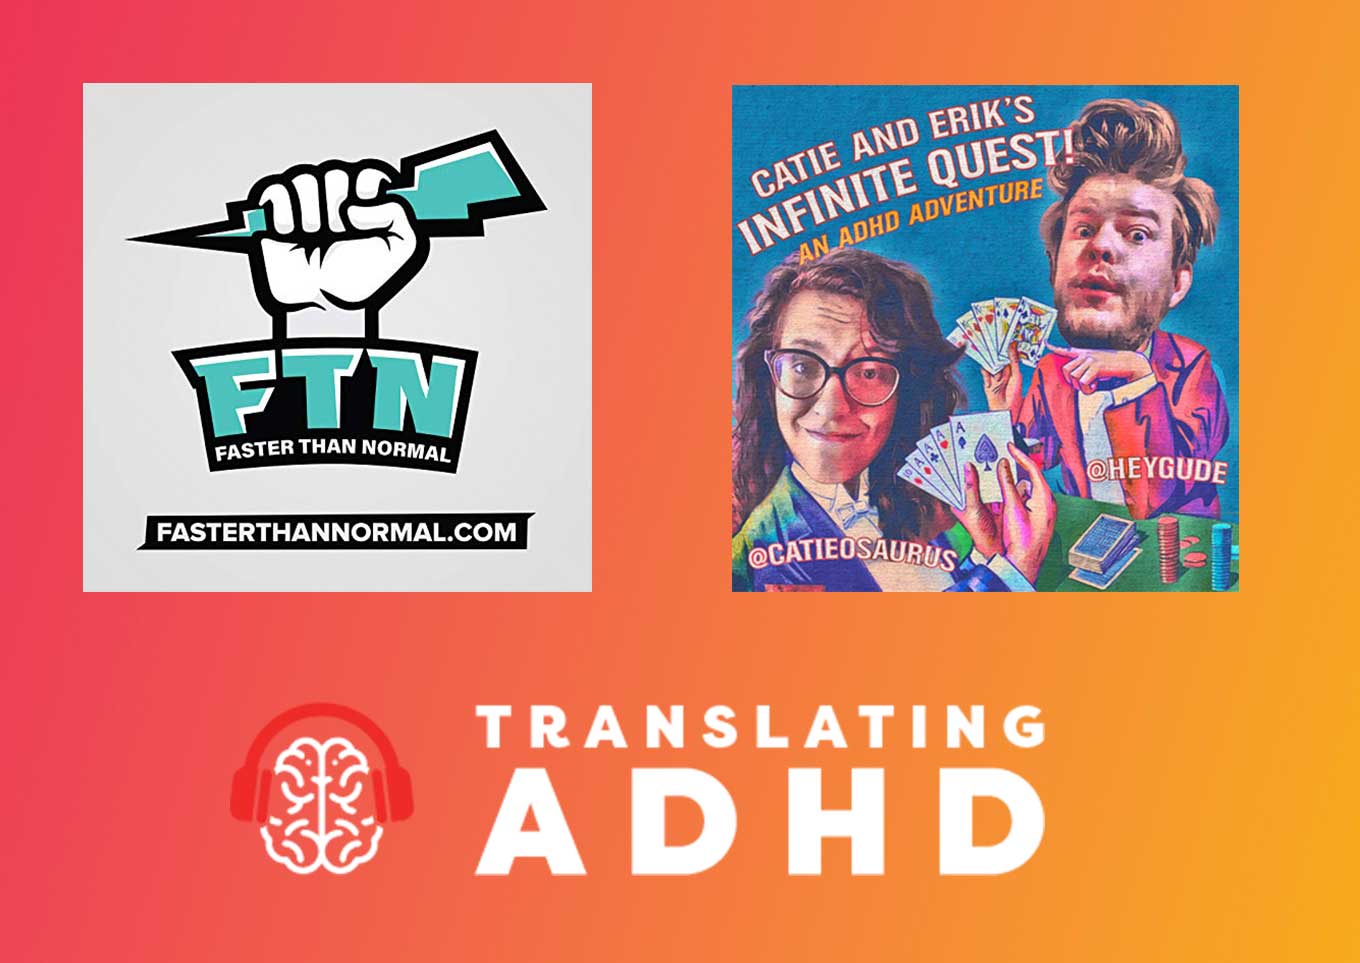 Faster Than Normal Podcast, Catie en Erik's Infinite Quest - Een ADHD-avontuur en ADHD-podcast vertalen